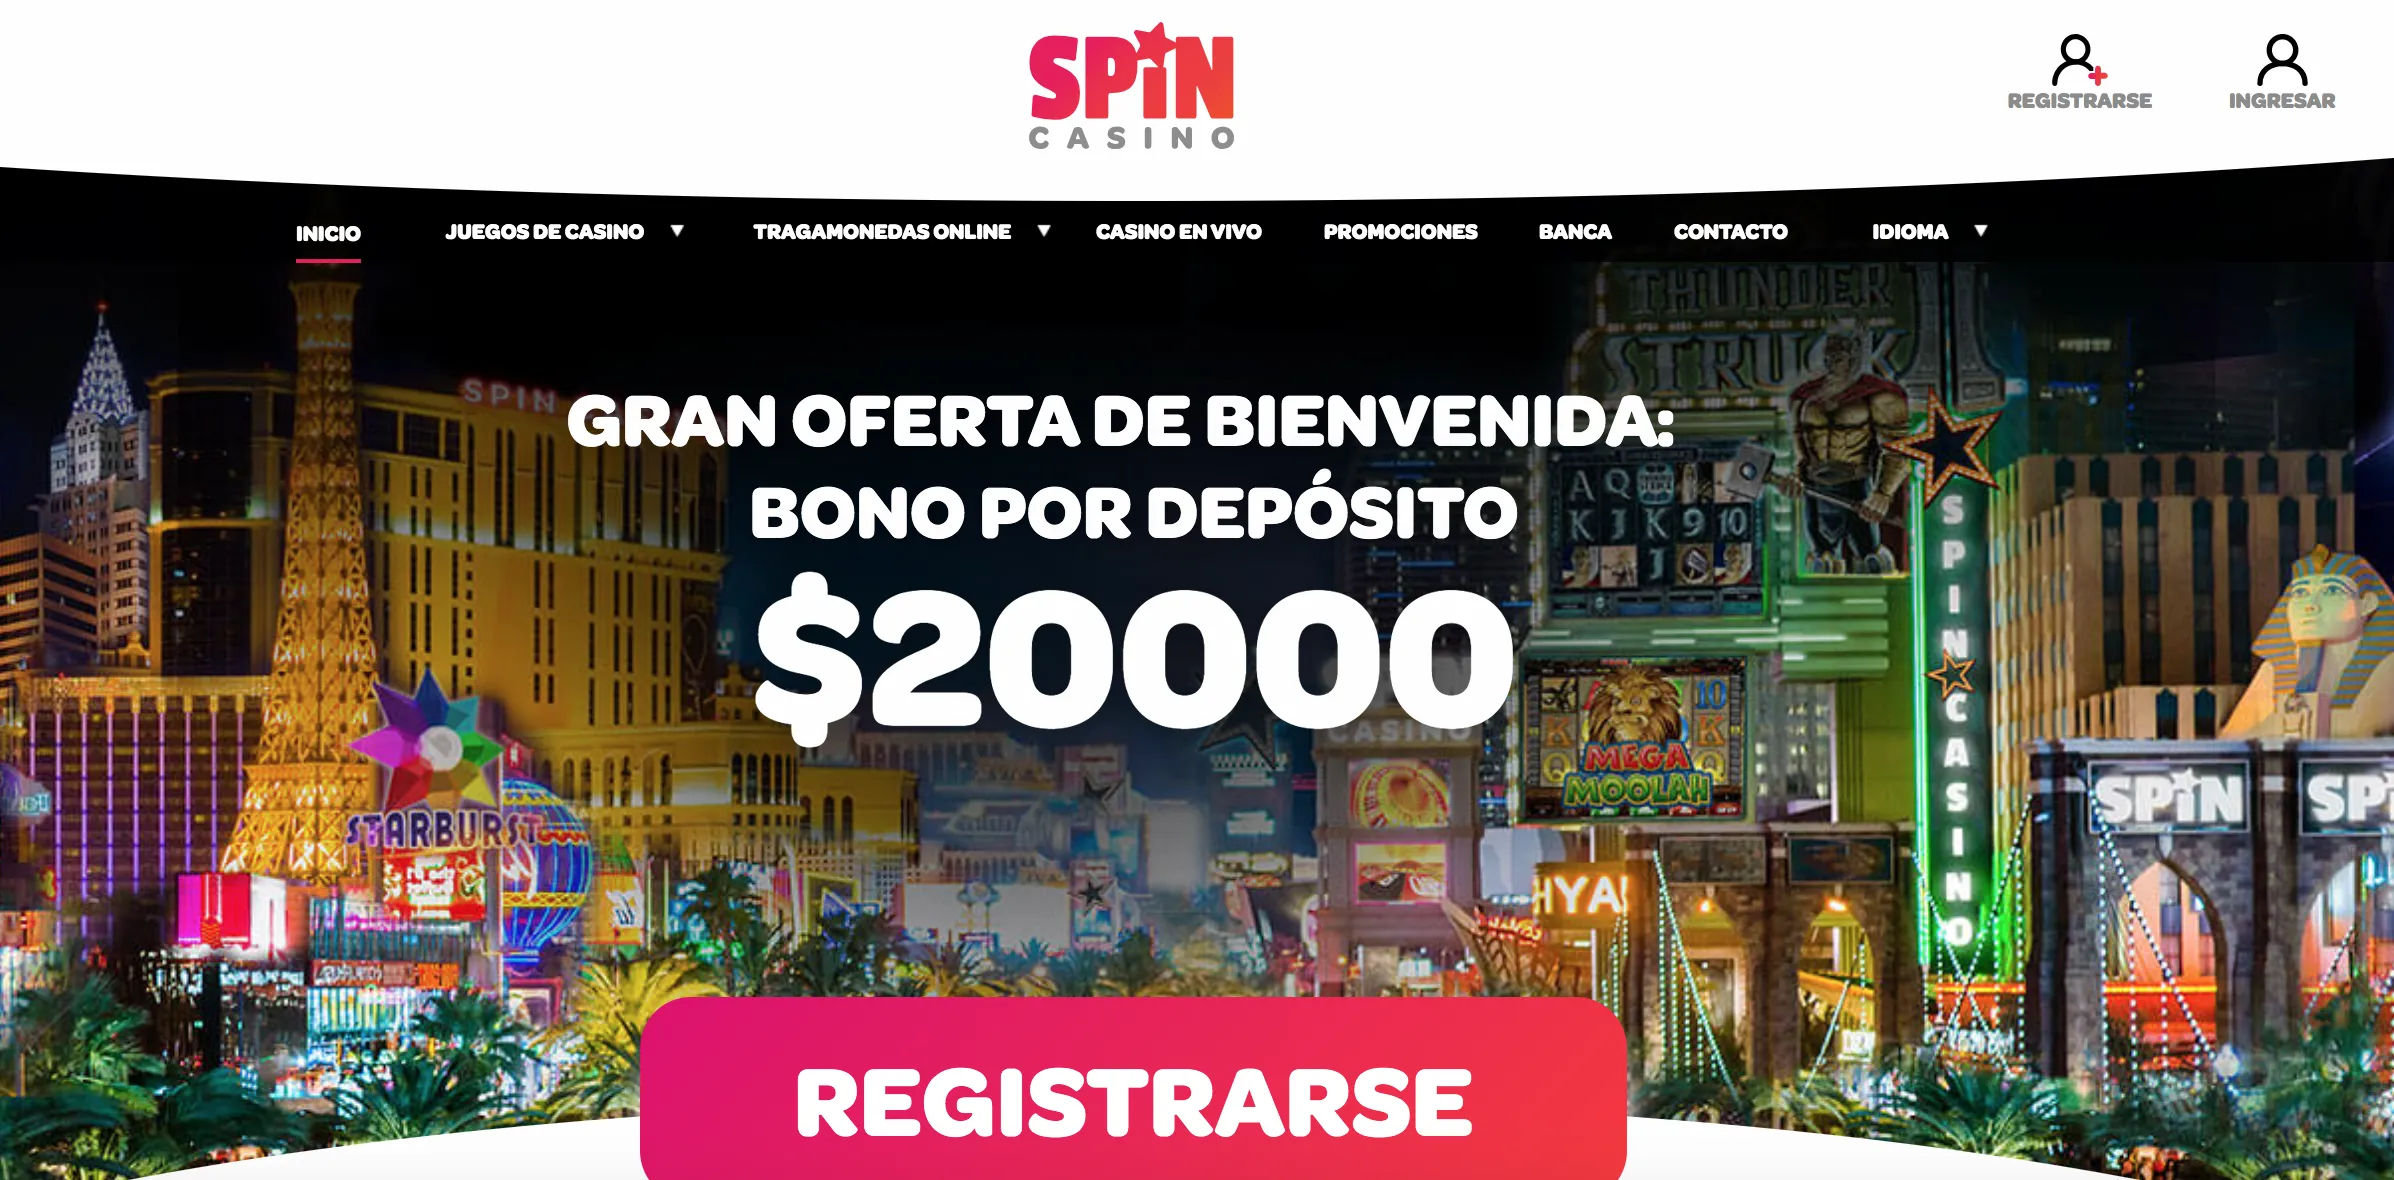 Spin Casino bonos en juegos online